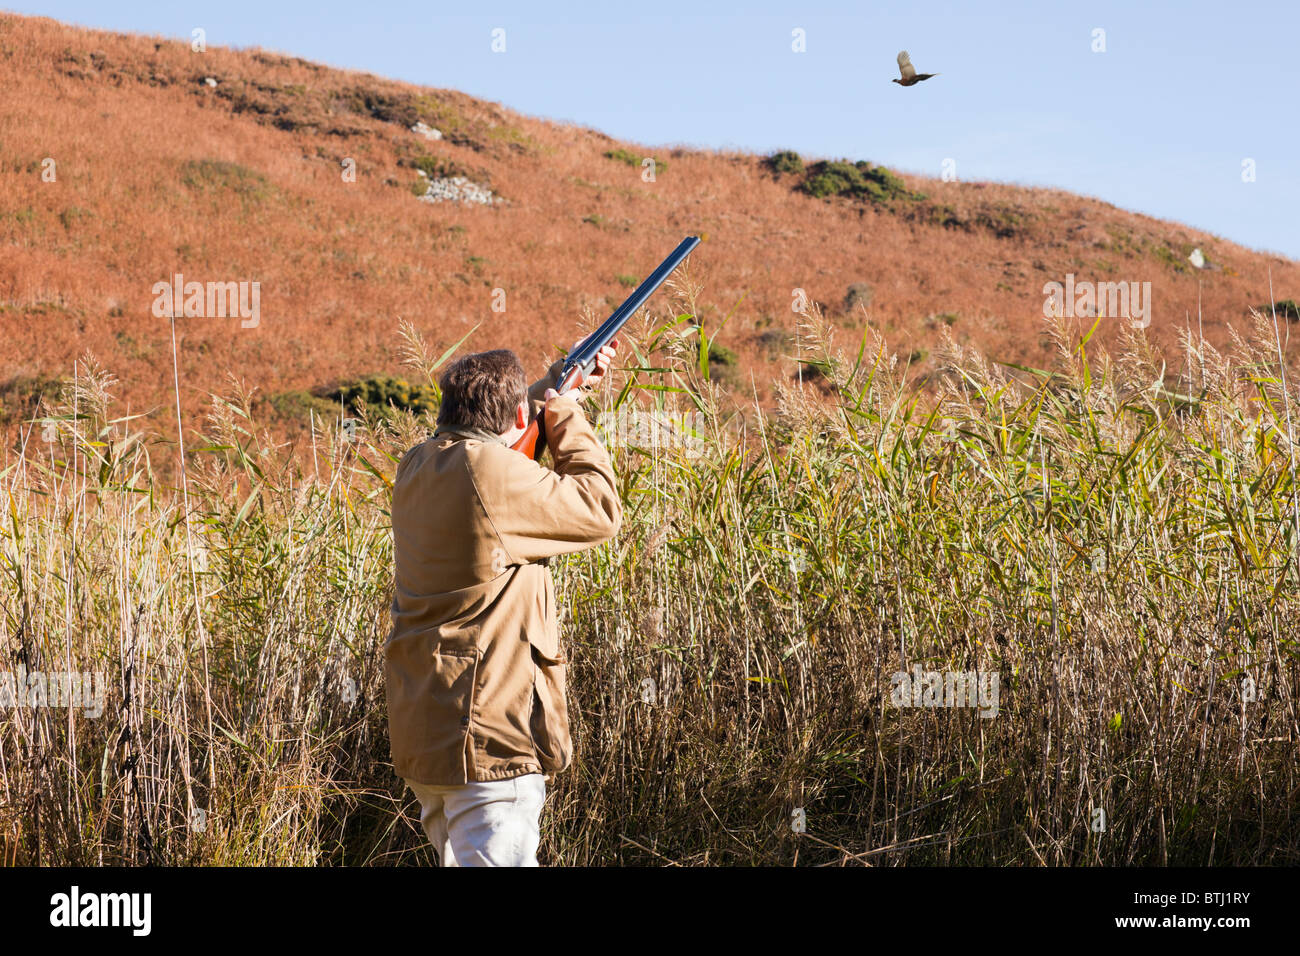 Spiel Vogel Schießen mit dem Menschen mit dem Ziel, eine Schrotflinte auf einem Fasan über Schilf in dem Land fliegen. Isle of Anglesey, North Wales, UK. Stockfoto